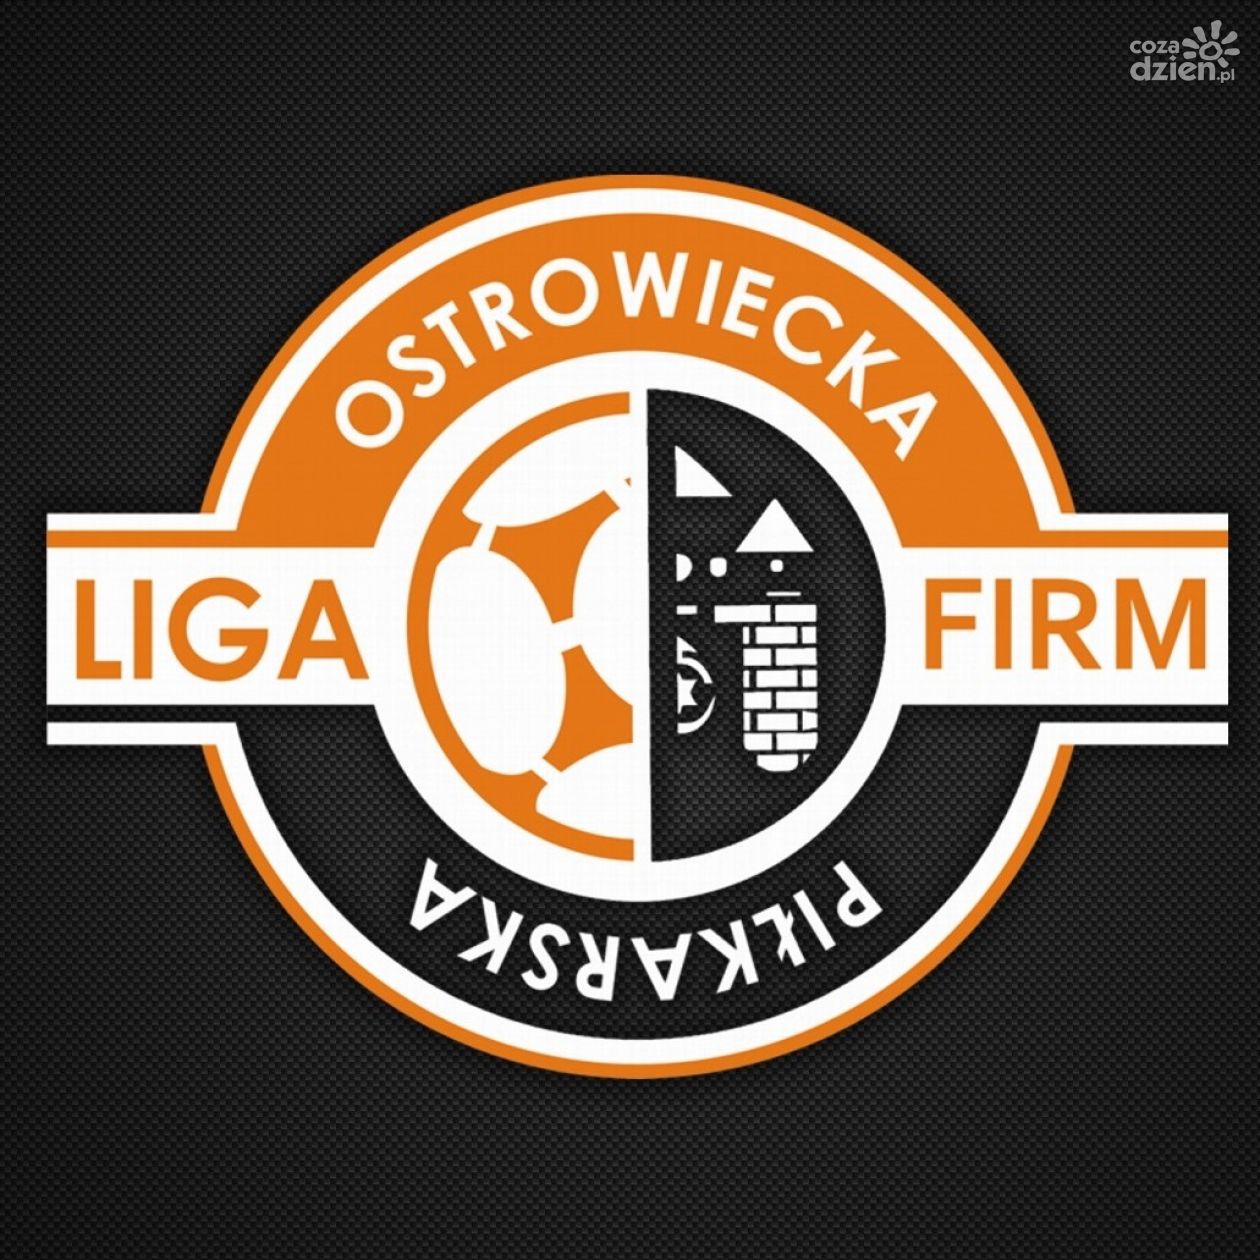 Za nami 3. kolejka Ostrowieckiej Piłkarskiej Ligi Firm, w której bramek nie brakuje